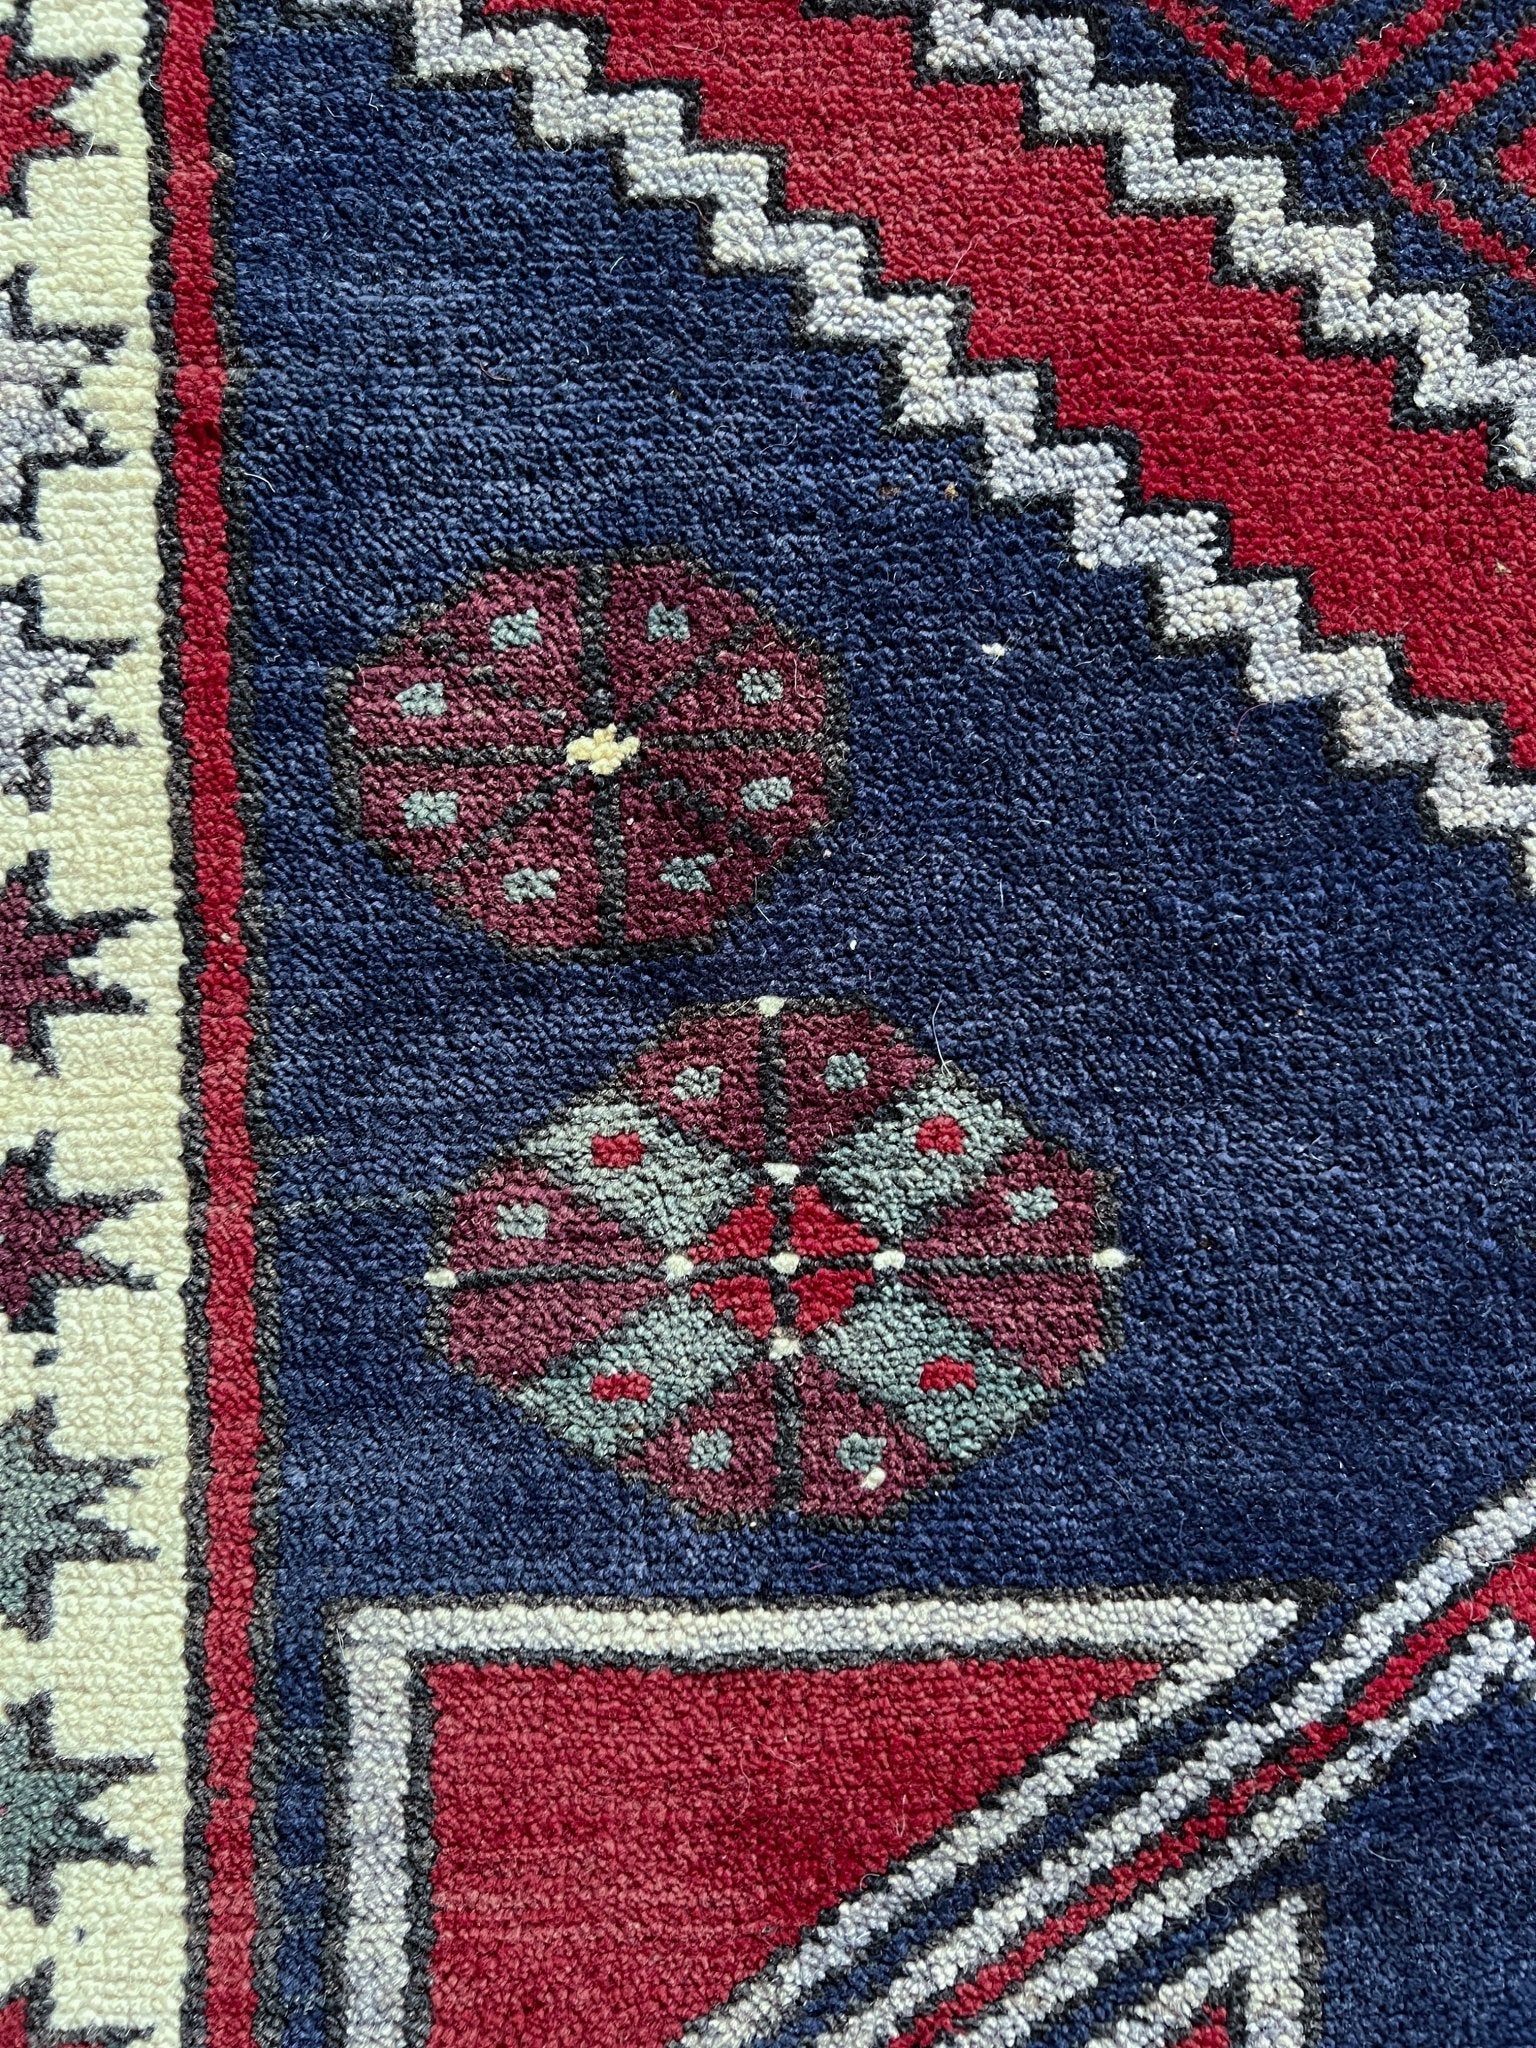 konya karapinar turkish rug shop palo alto oriental rugs berkeley vintage rug shop san francisco bay area buy rugs online